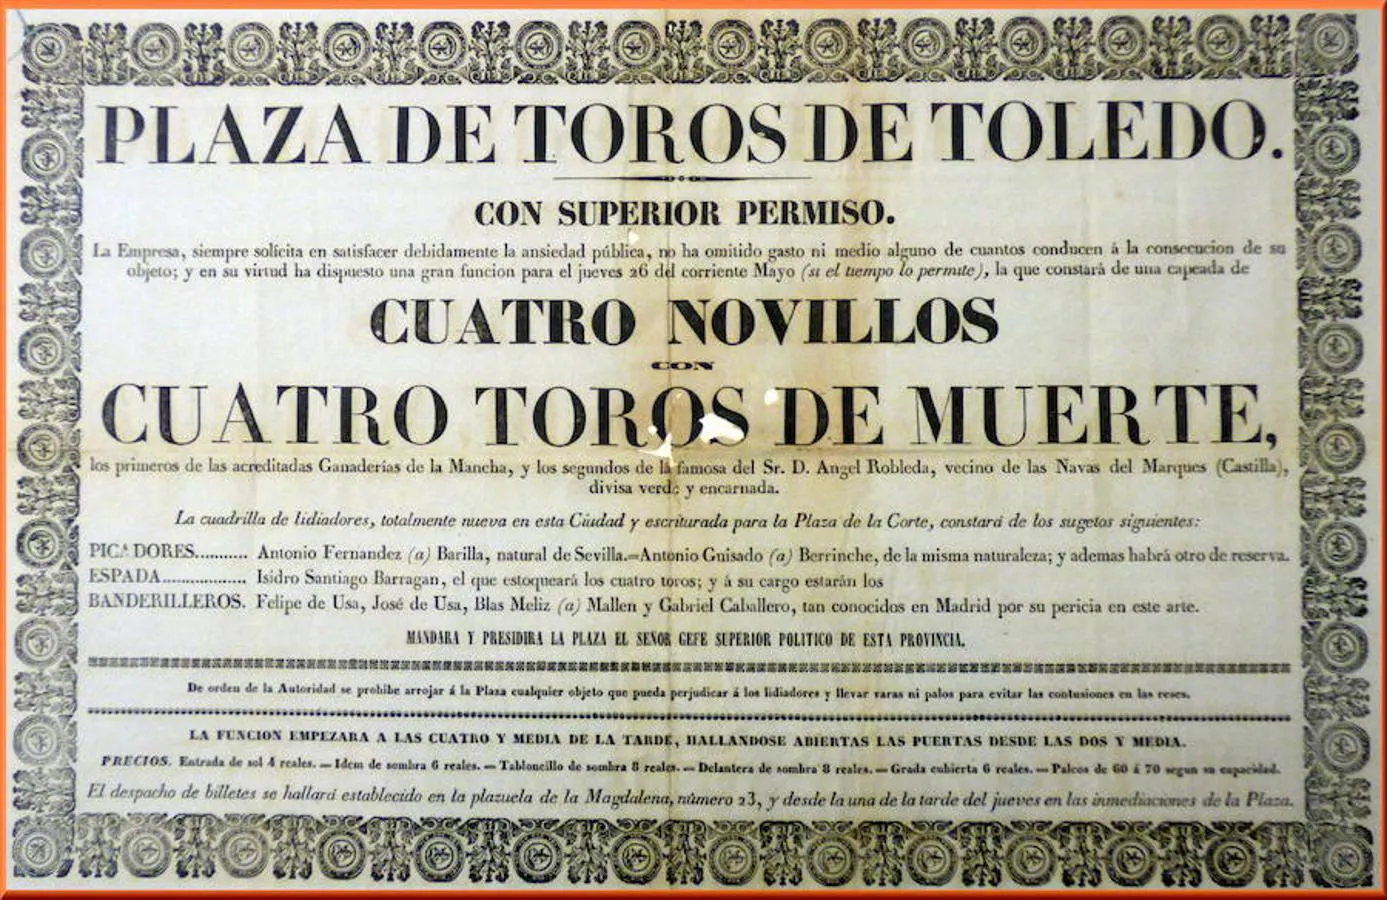 De Zocodover a San Lázaro. Una plaza de toros en la Regencia de Espartero (1840-1843)